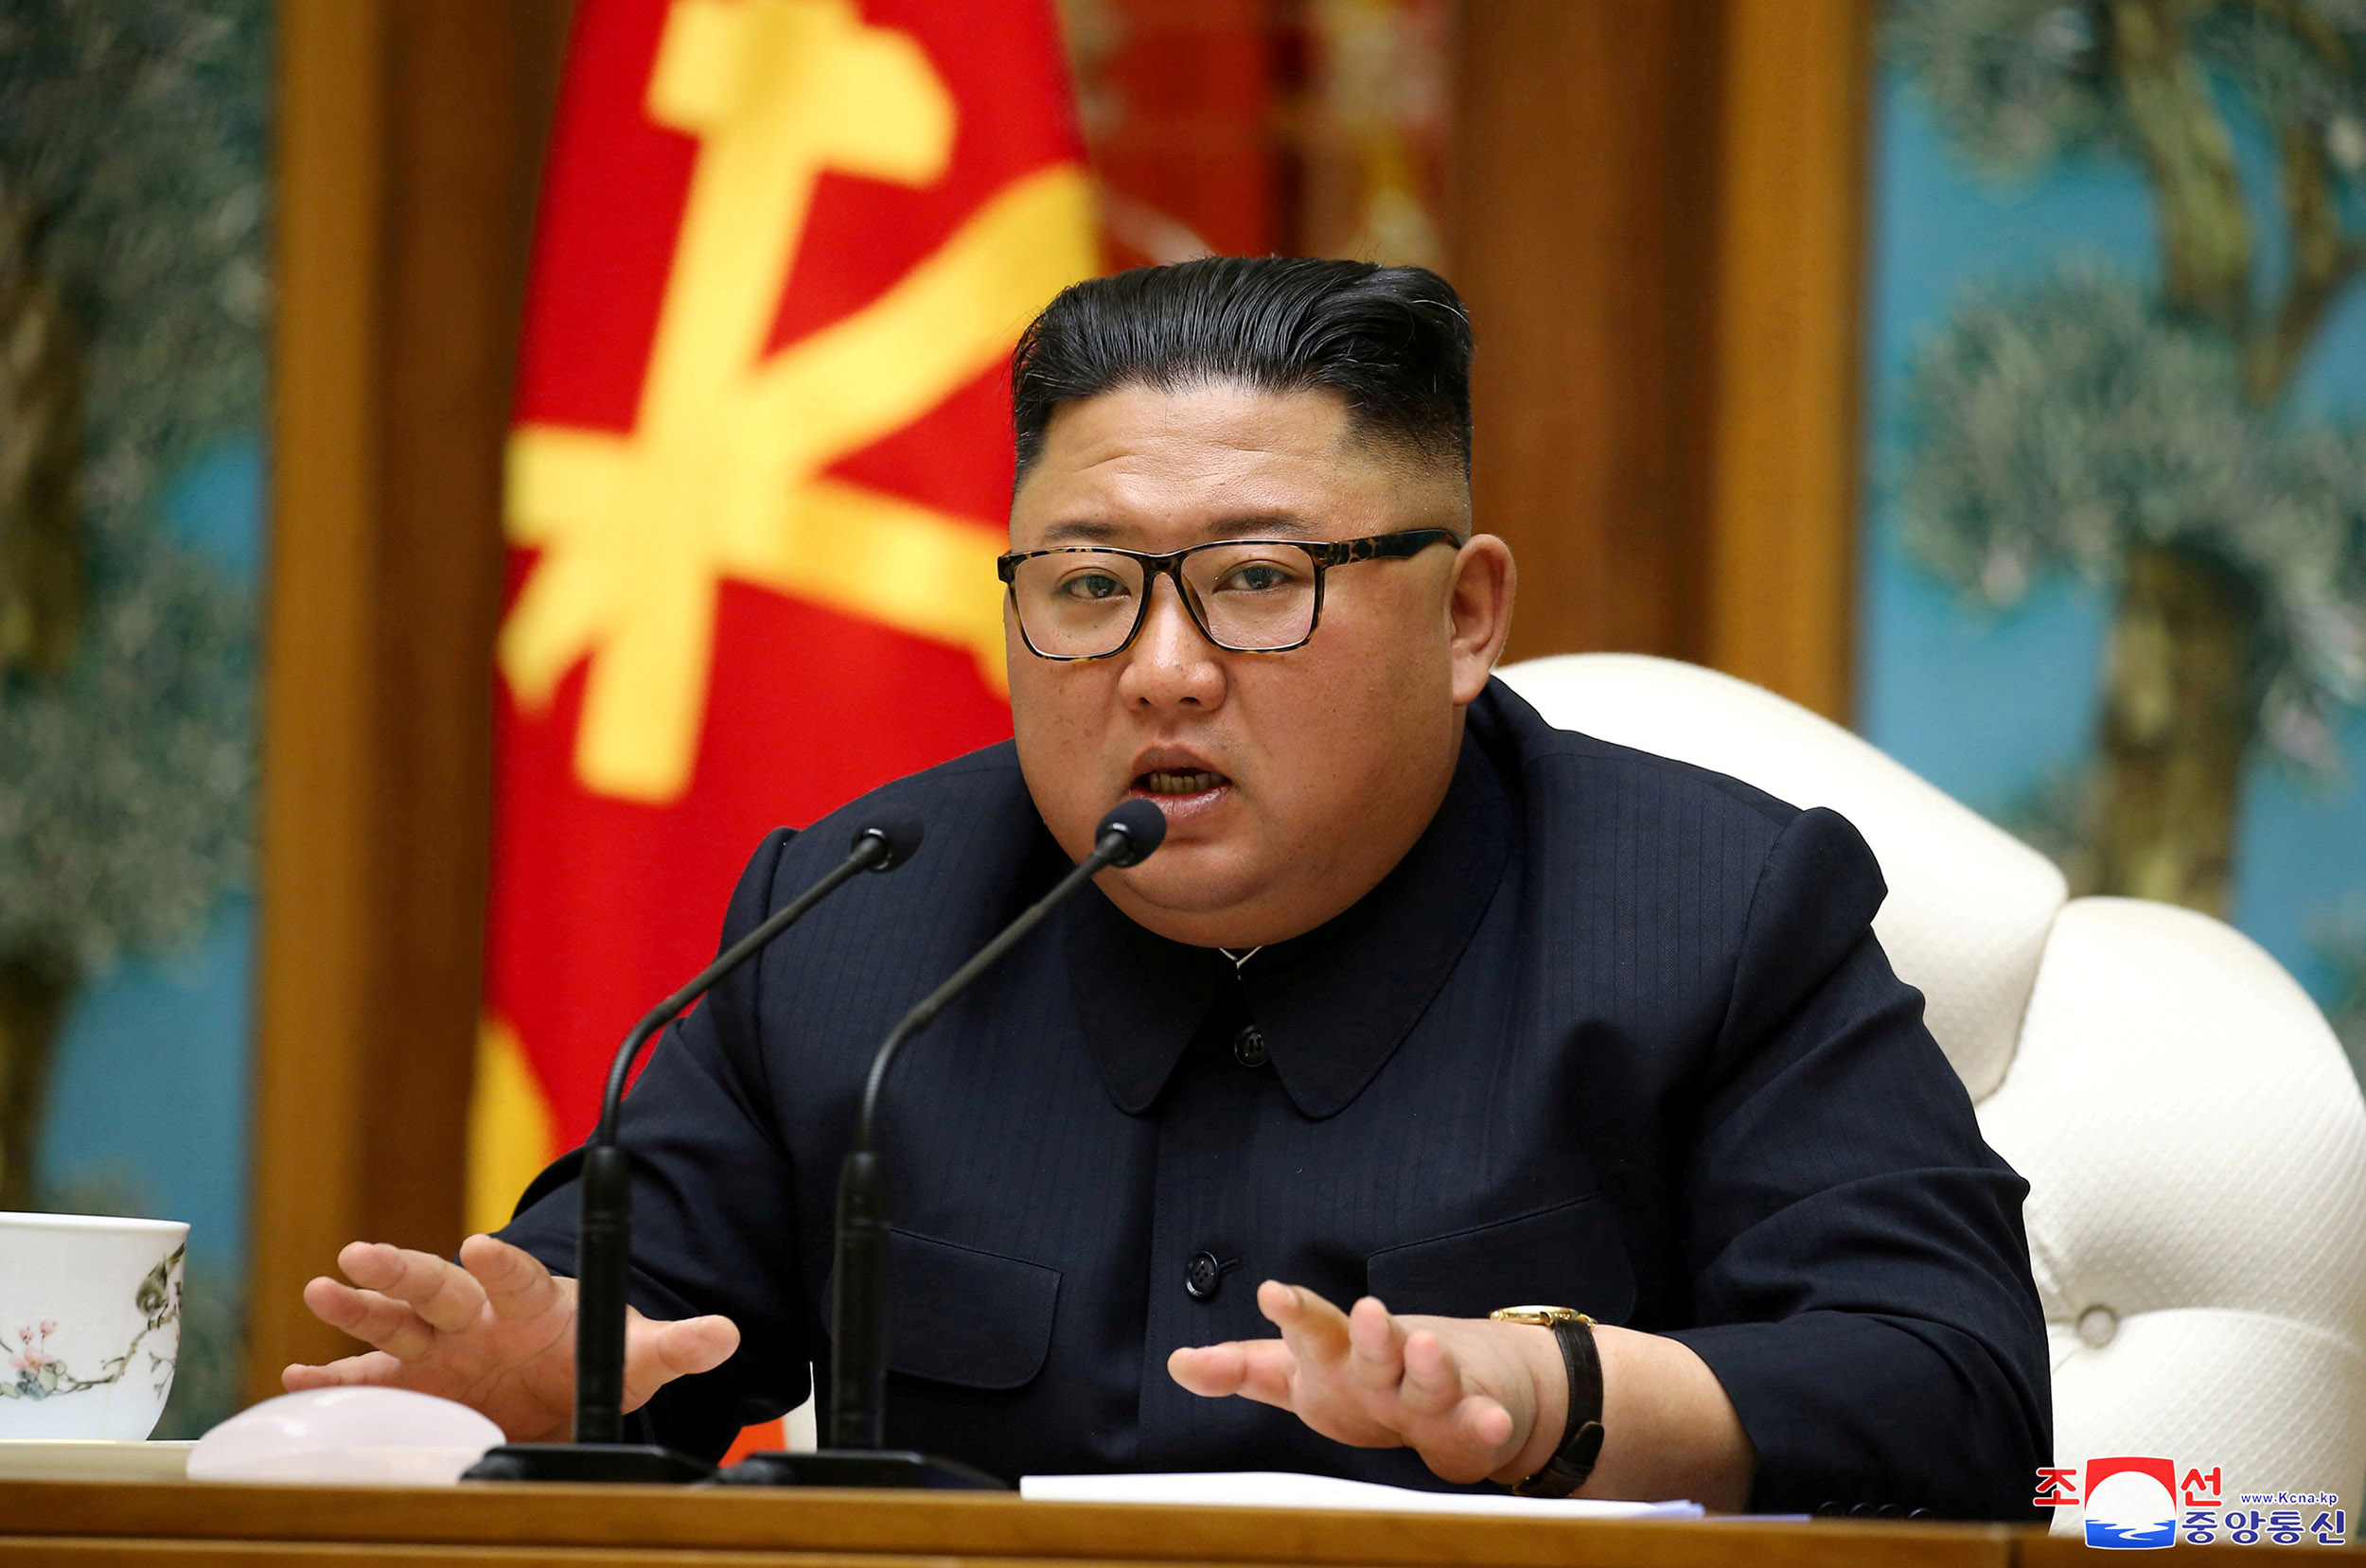 MISTERIJA: Gdje je Kim Jong-un? Je li živ?